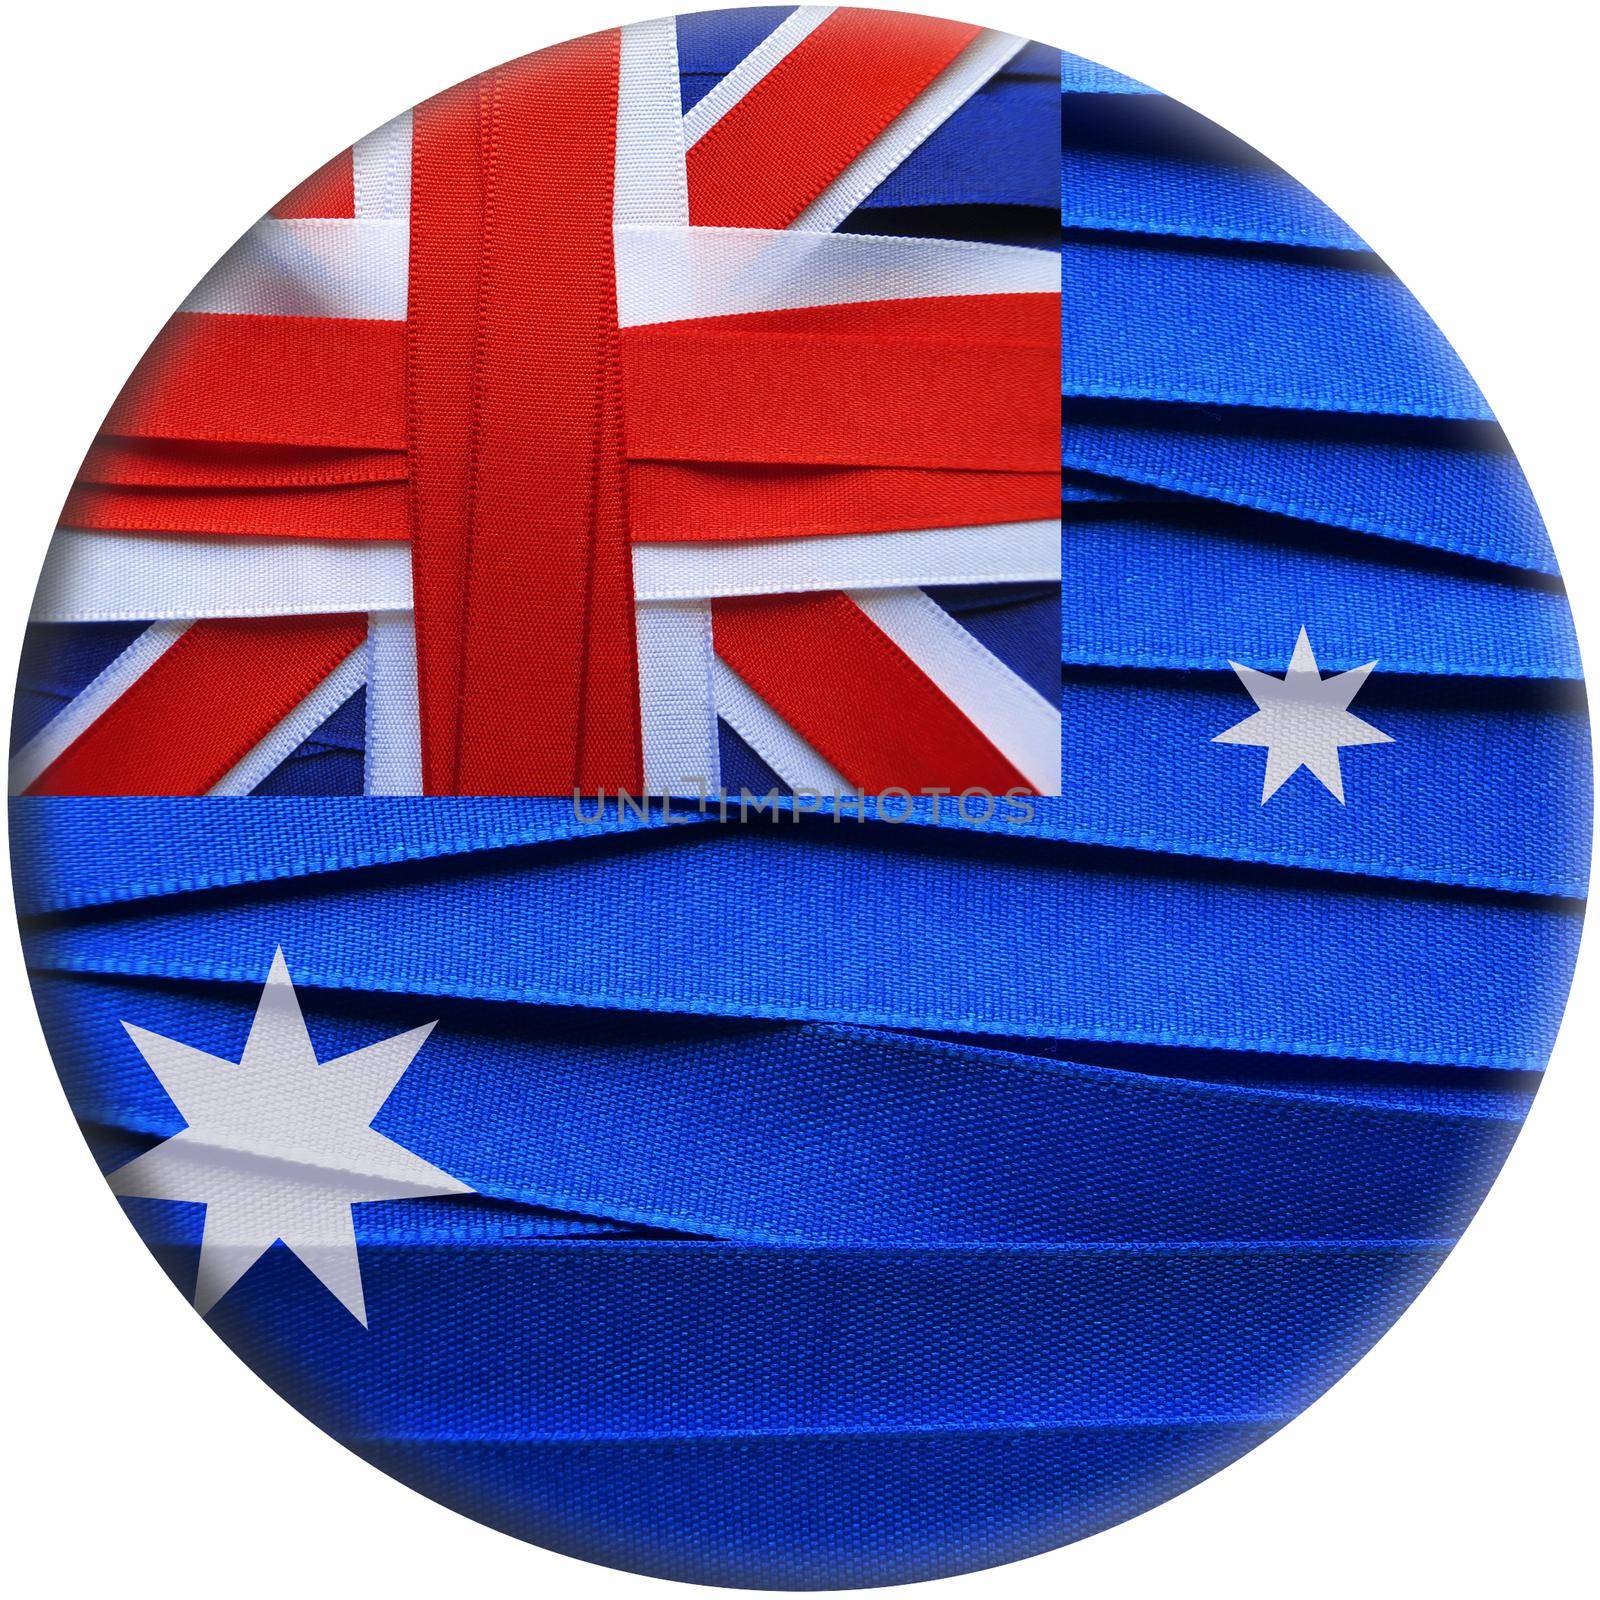 Australia flag or banner by aroas